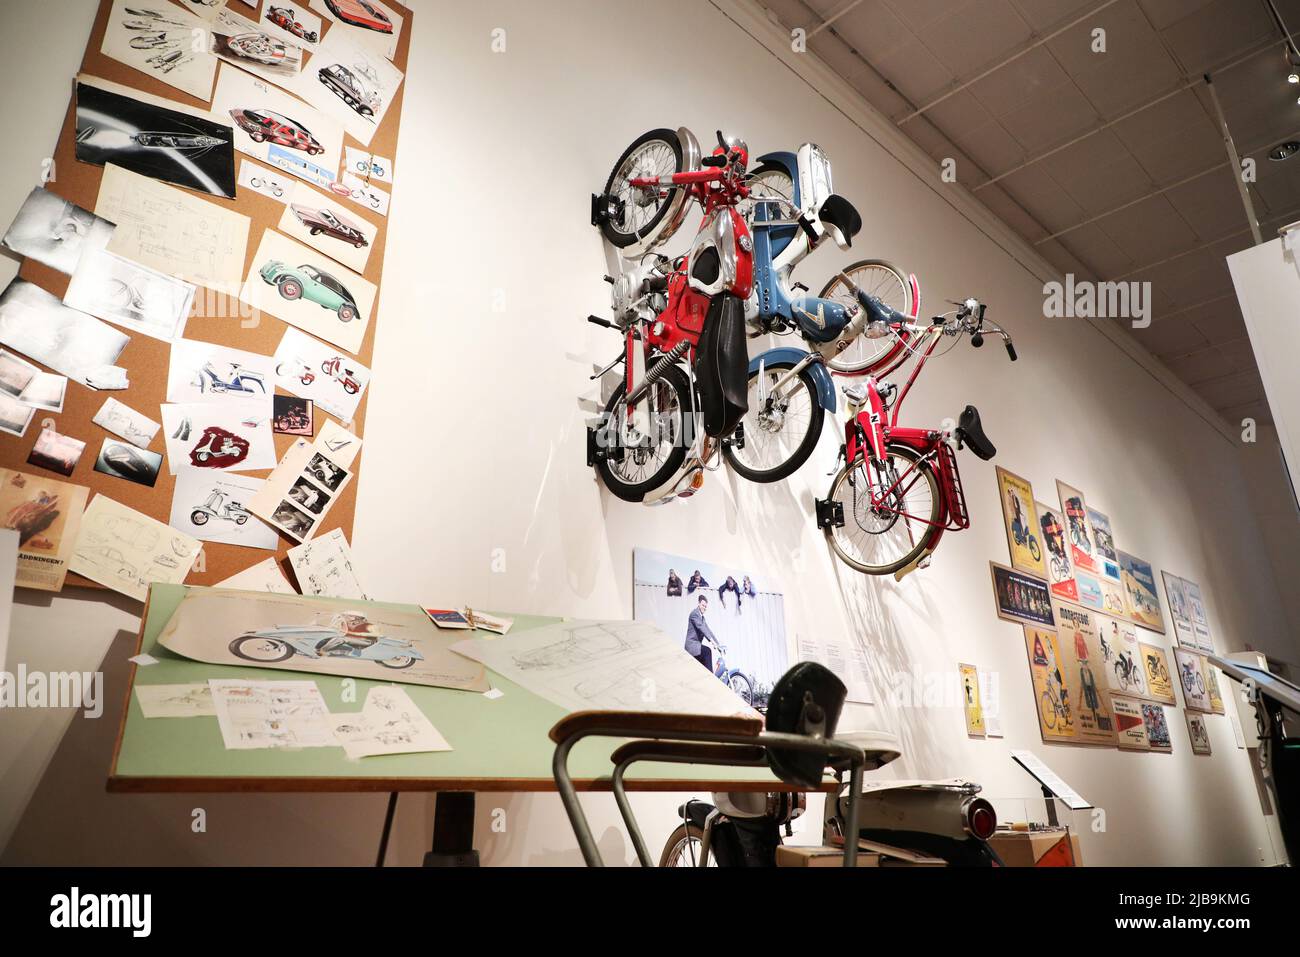 Nach drei Jahren Renovierung wird das Museum von Östergötland in Linköping, Schweden, wieder eröffnet. Die Ausstellung 'das Moped - eine schwedische Designgeschichte' (auf Schwedisch: 'Mopeden-en svensk designhistoria). Eine Ausstellung, die tief in die Designgeschichte des Mopeds eingeht. Stockfoto